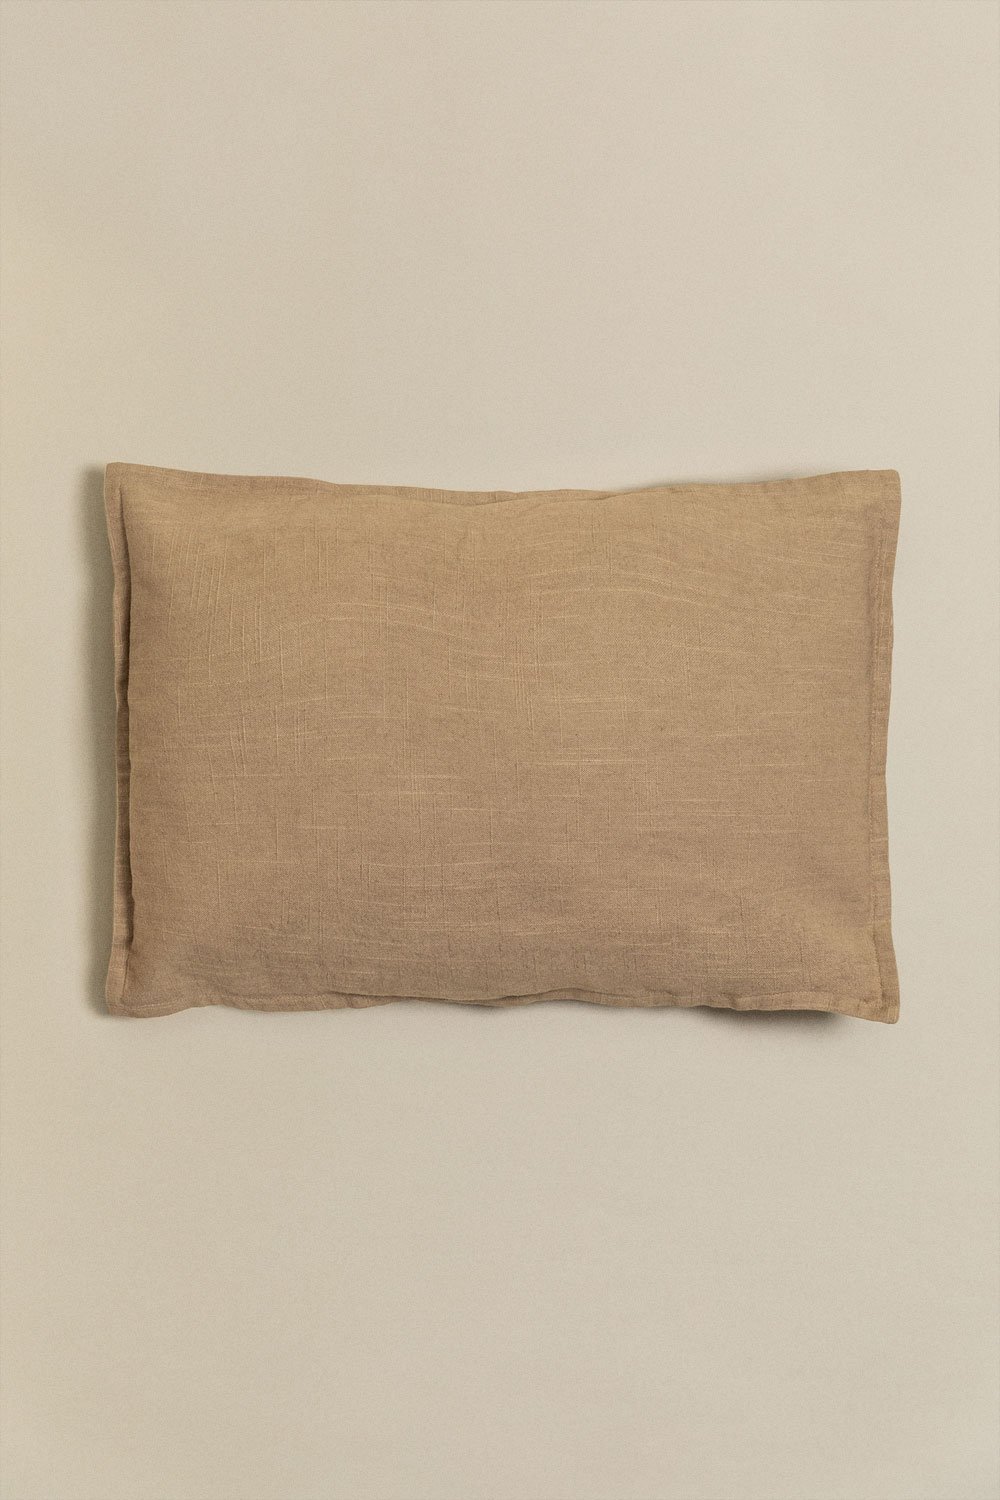 Prostokątna poduszka bawełniana (35x50 cm) Guillaume, obrazek w galerii 1